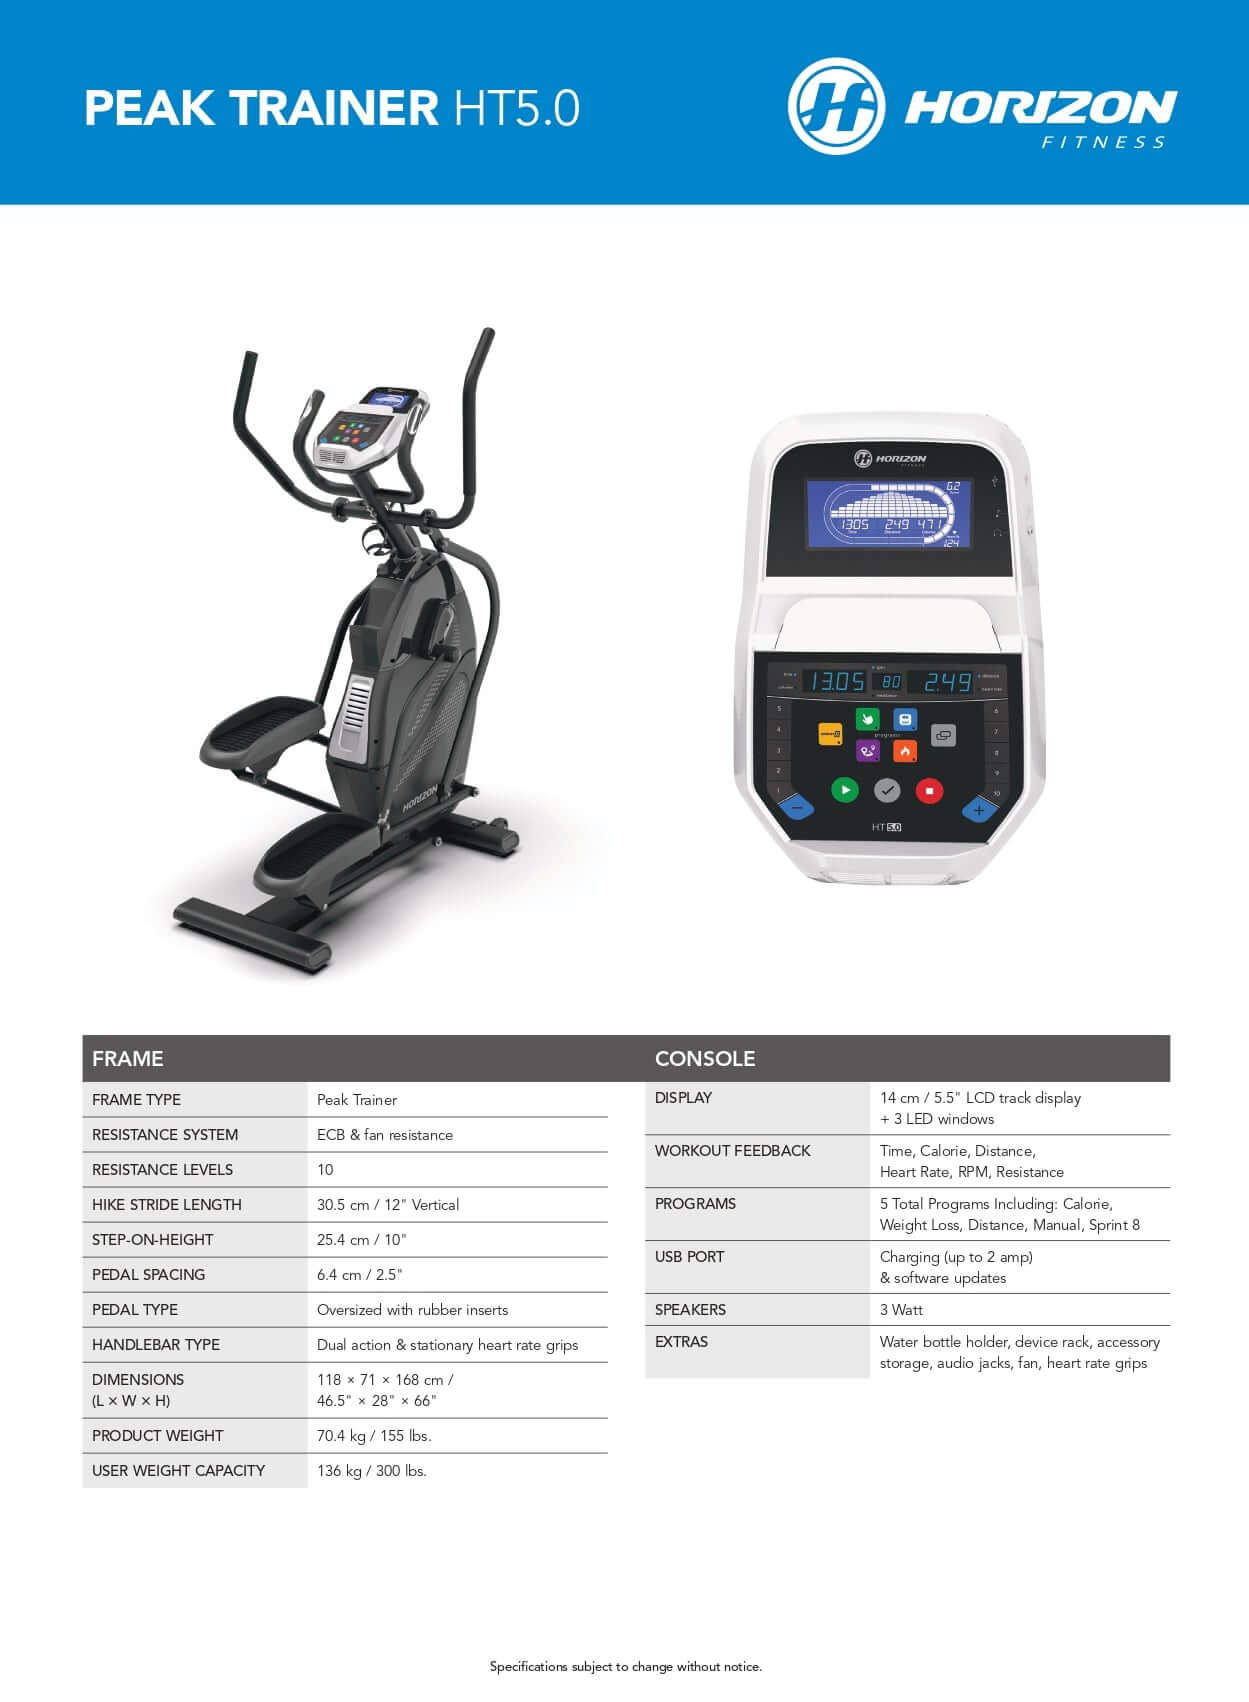 HORIZON Pro – Equipment Peak Wellness Trainer Fitness